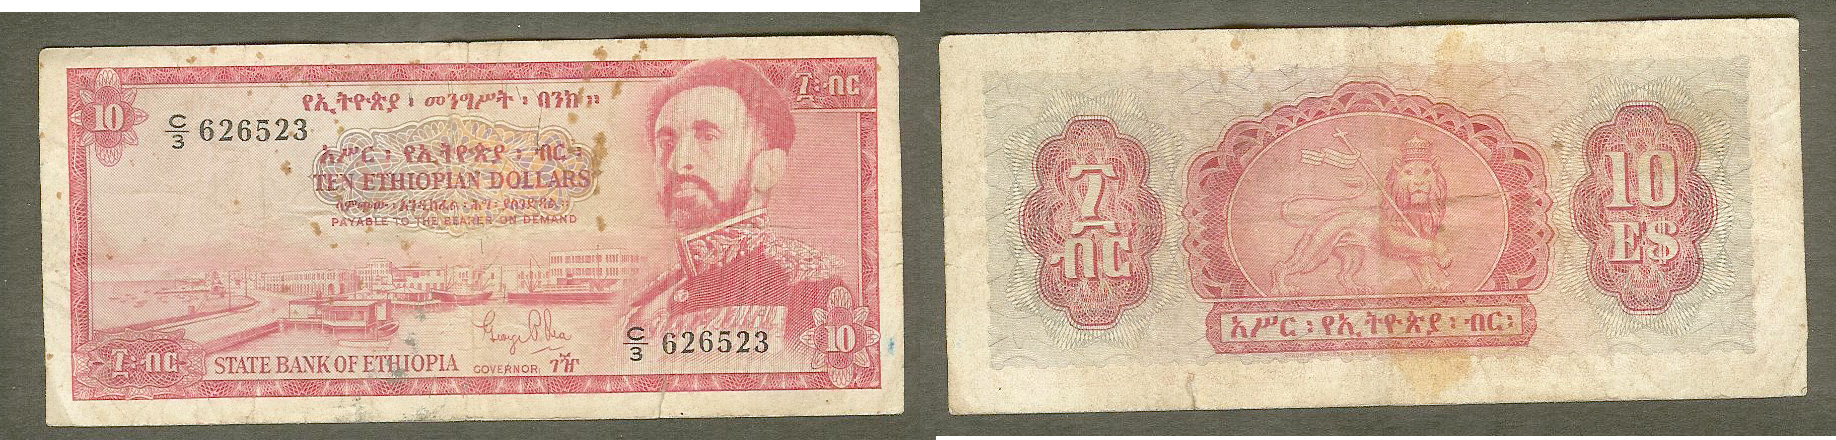 Ethiopia $10 1961 F